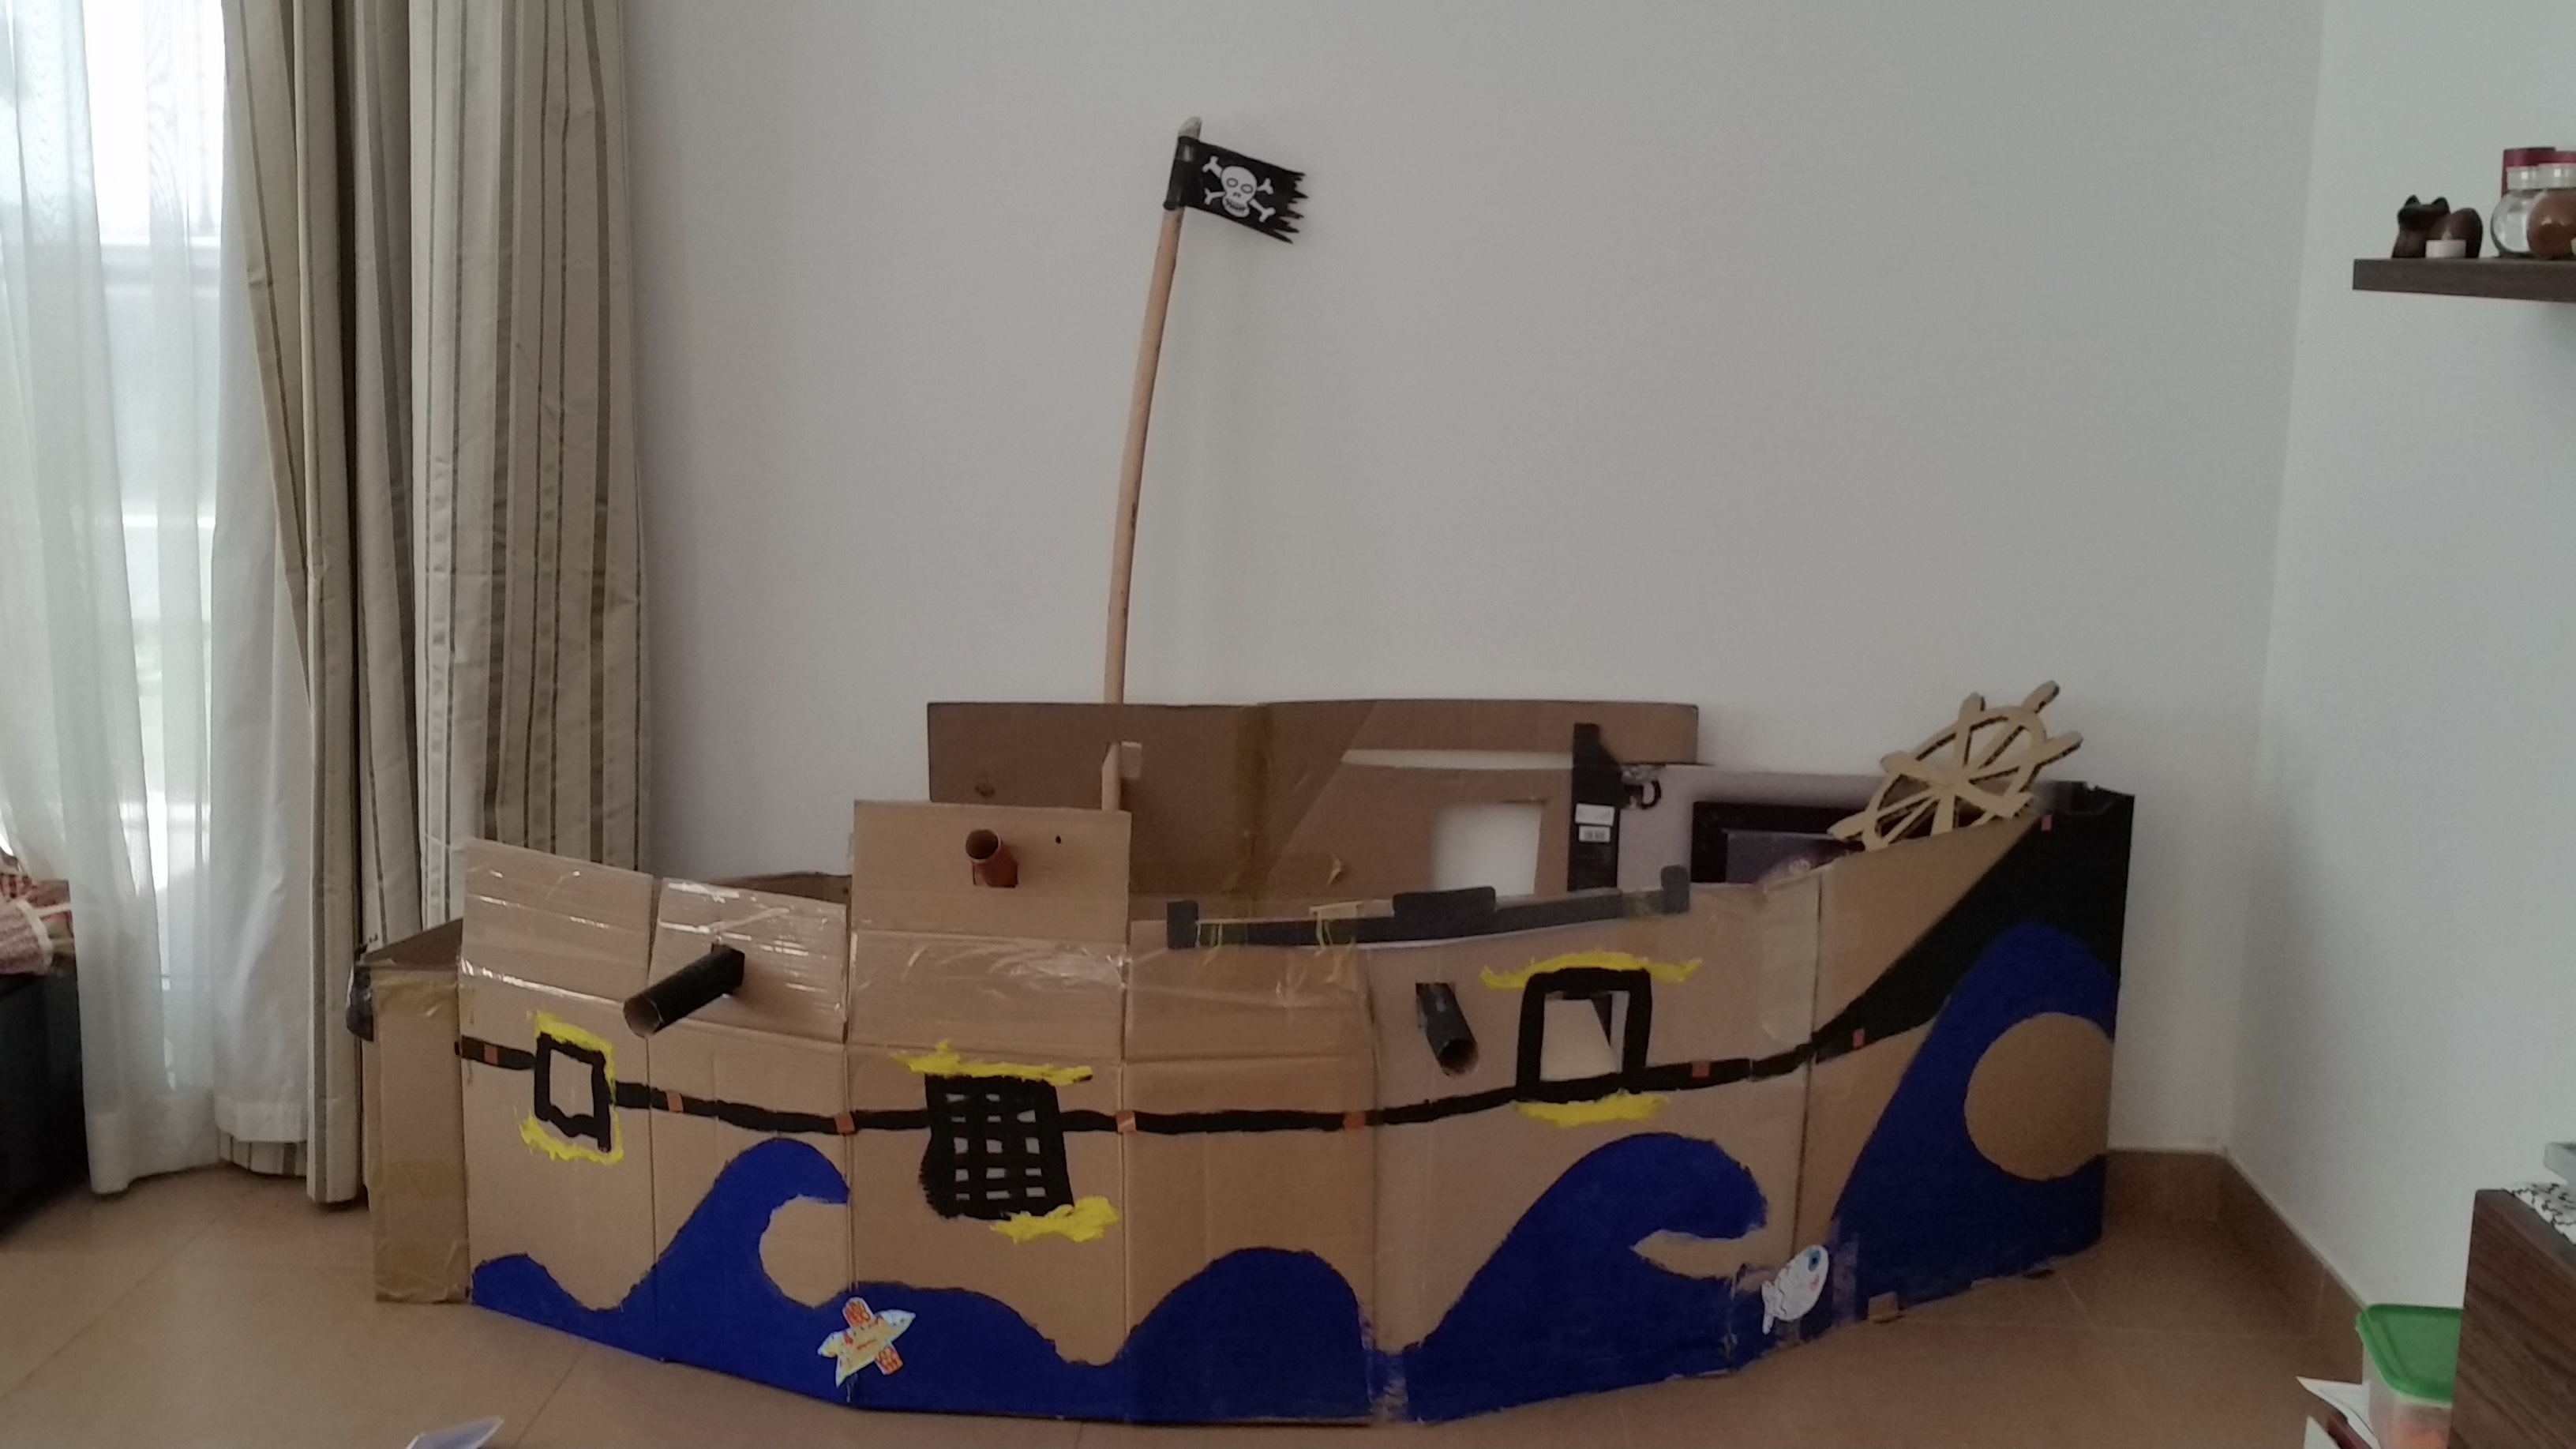 Notre bateau Pirate - mesptitsgrains